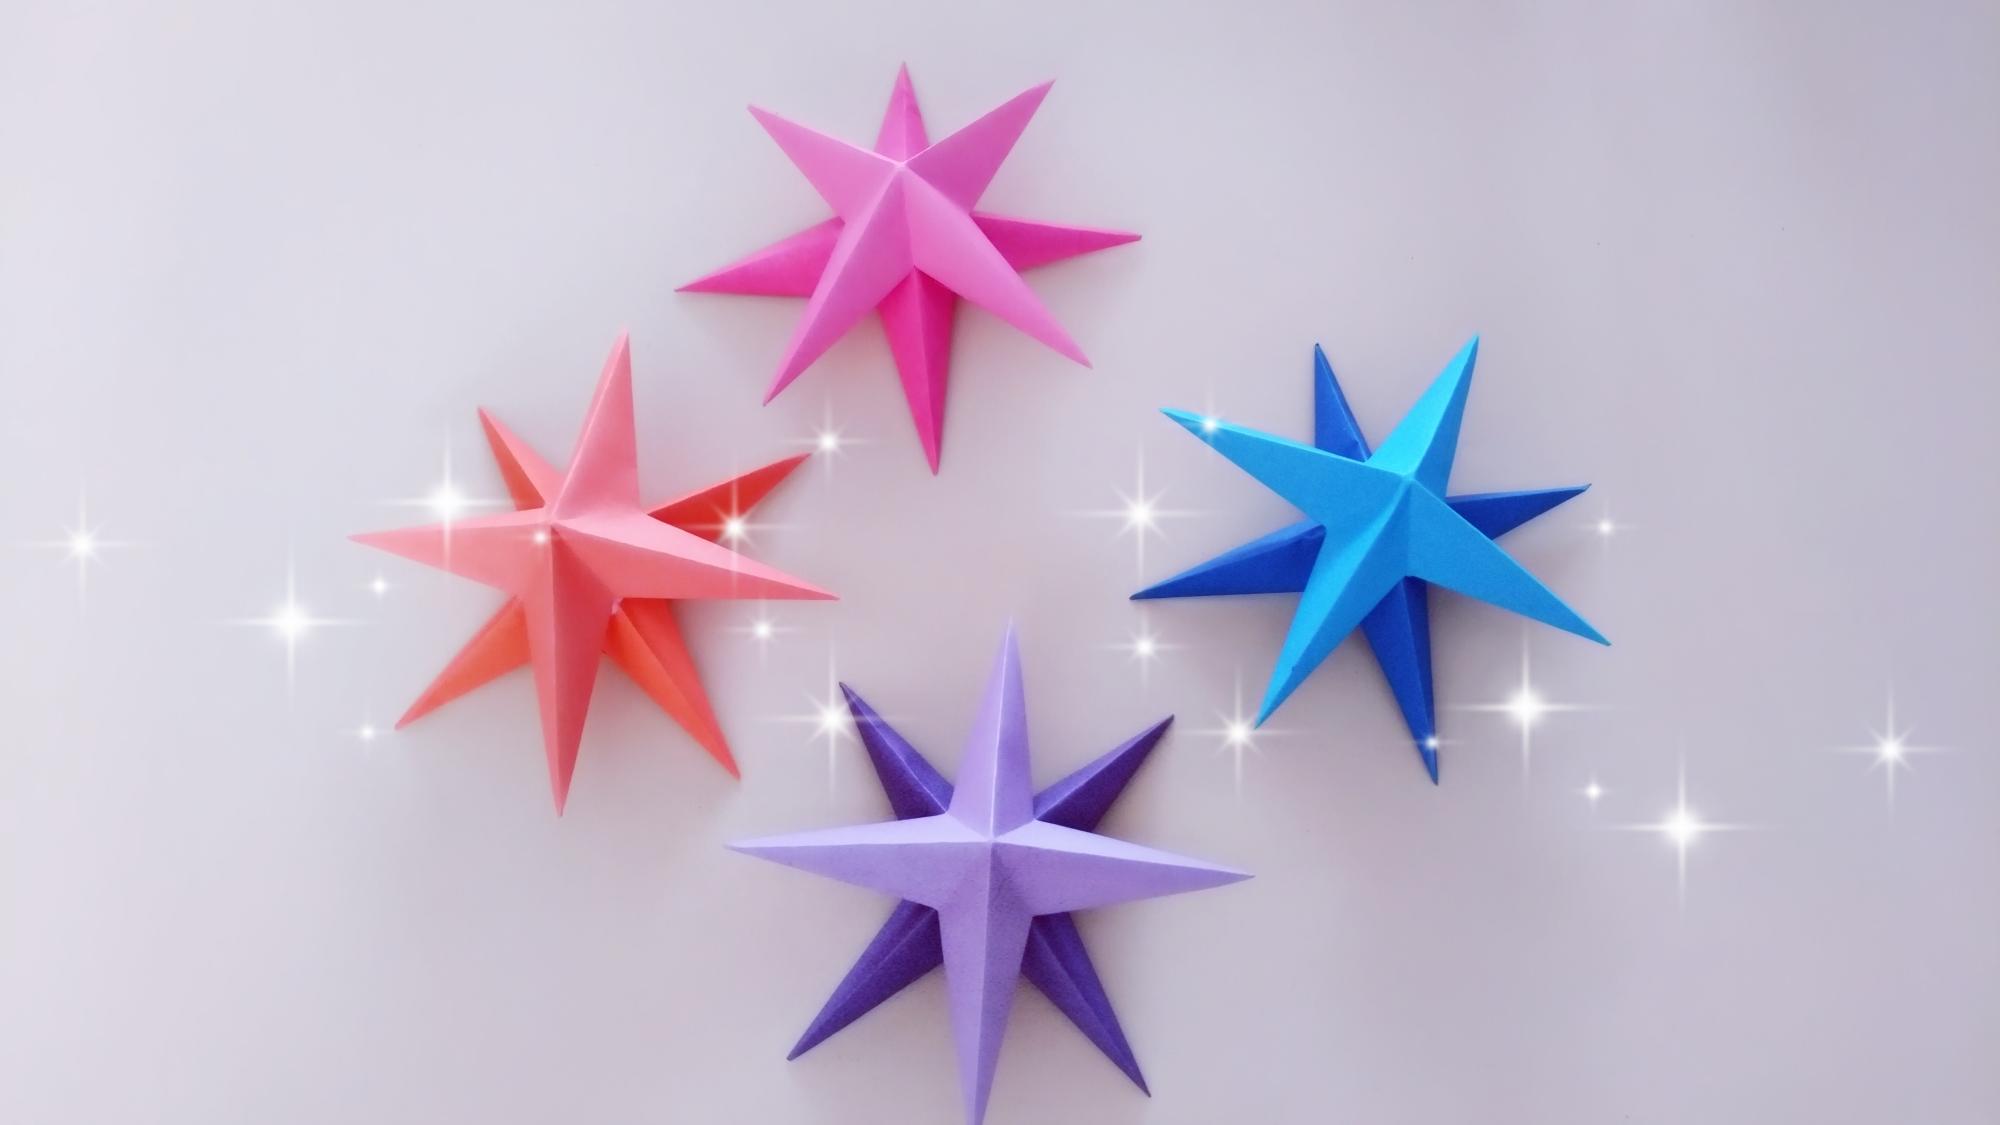 漂亮的星星折纸,做法很简单还是立体的,手工折纸视频教程